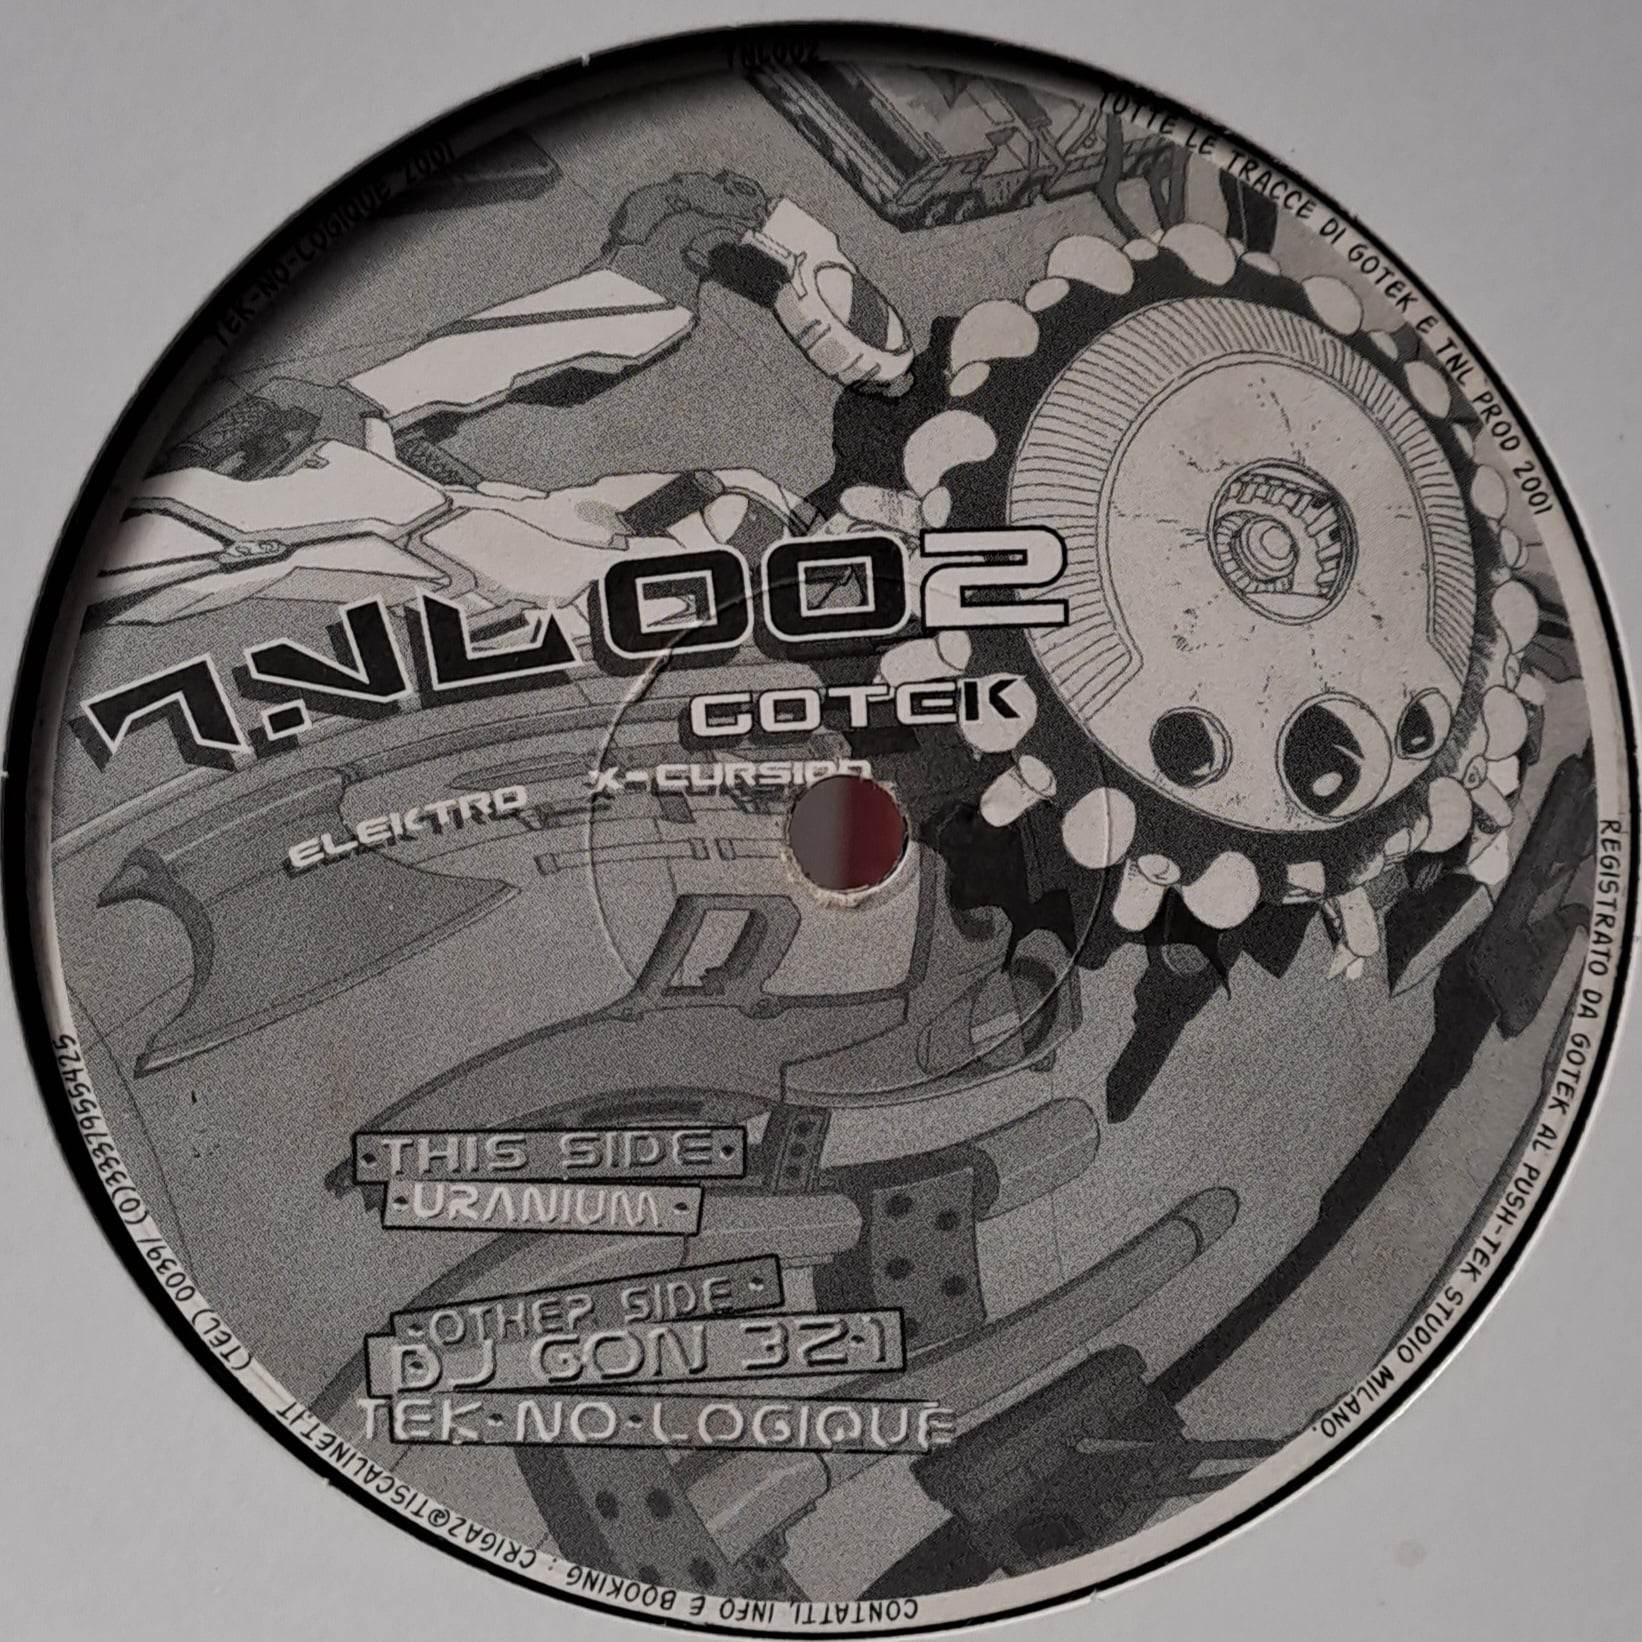 Tek No Logique 002 - vinyle freetekno